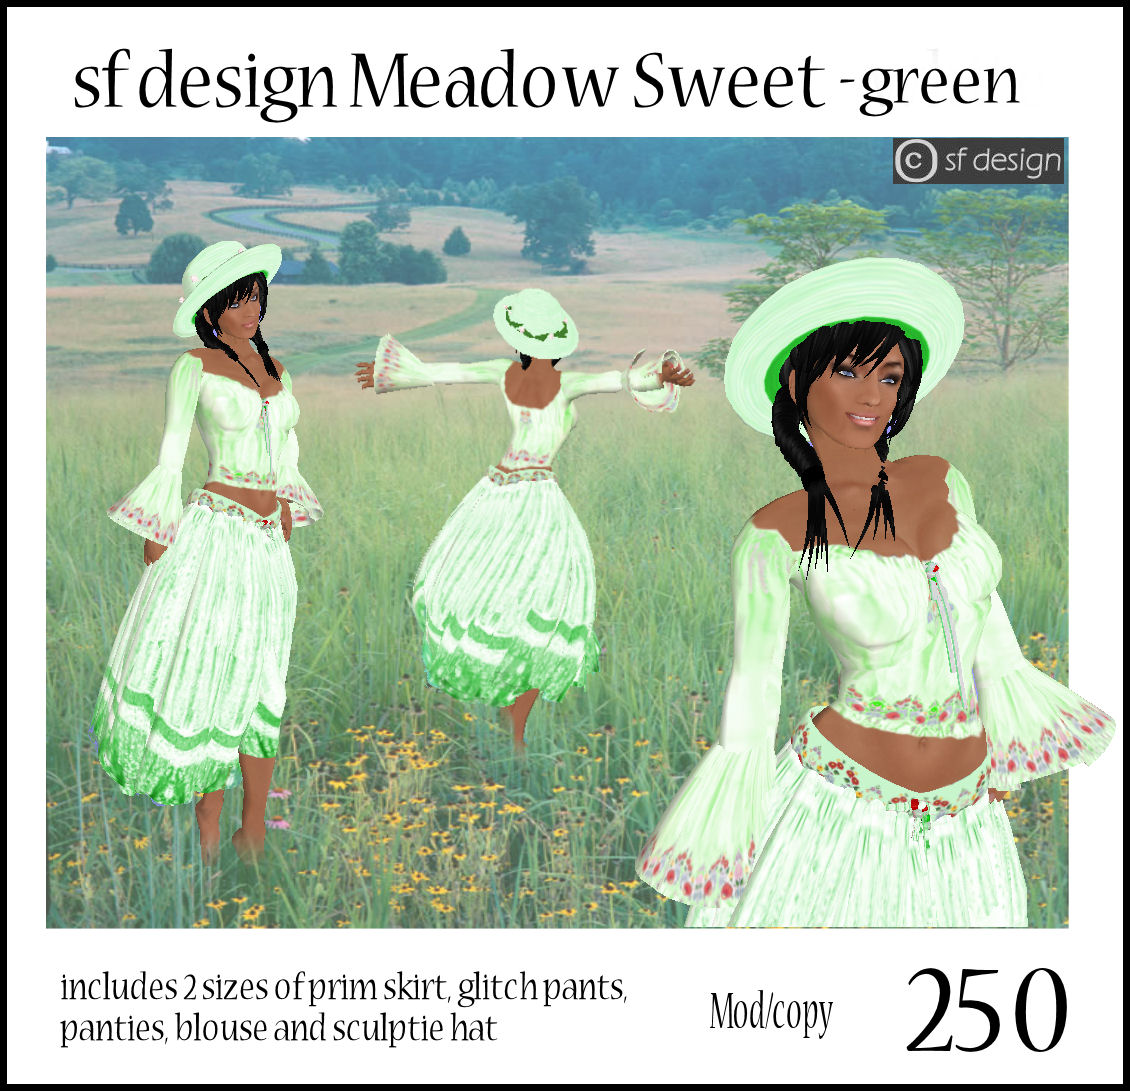 [meadow+sweet+green.jpg]